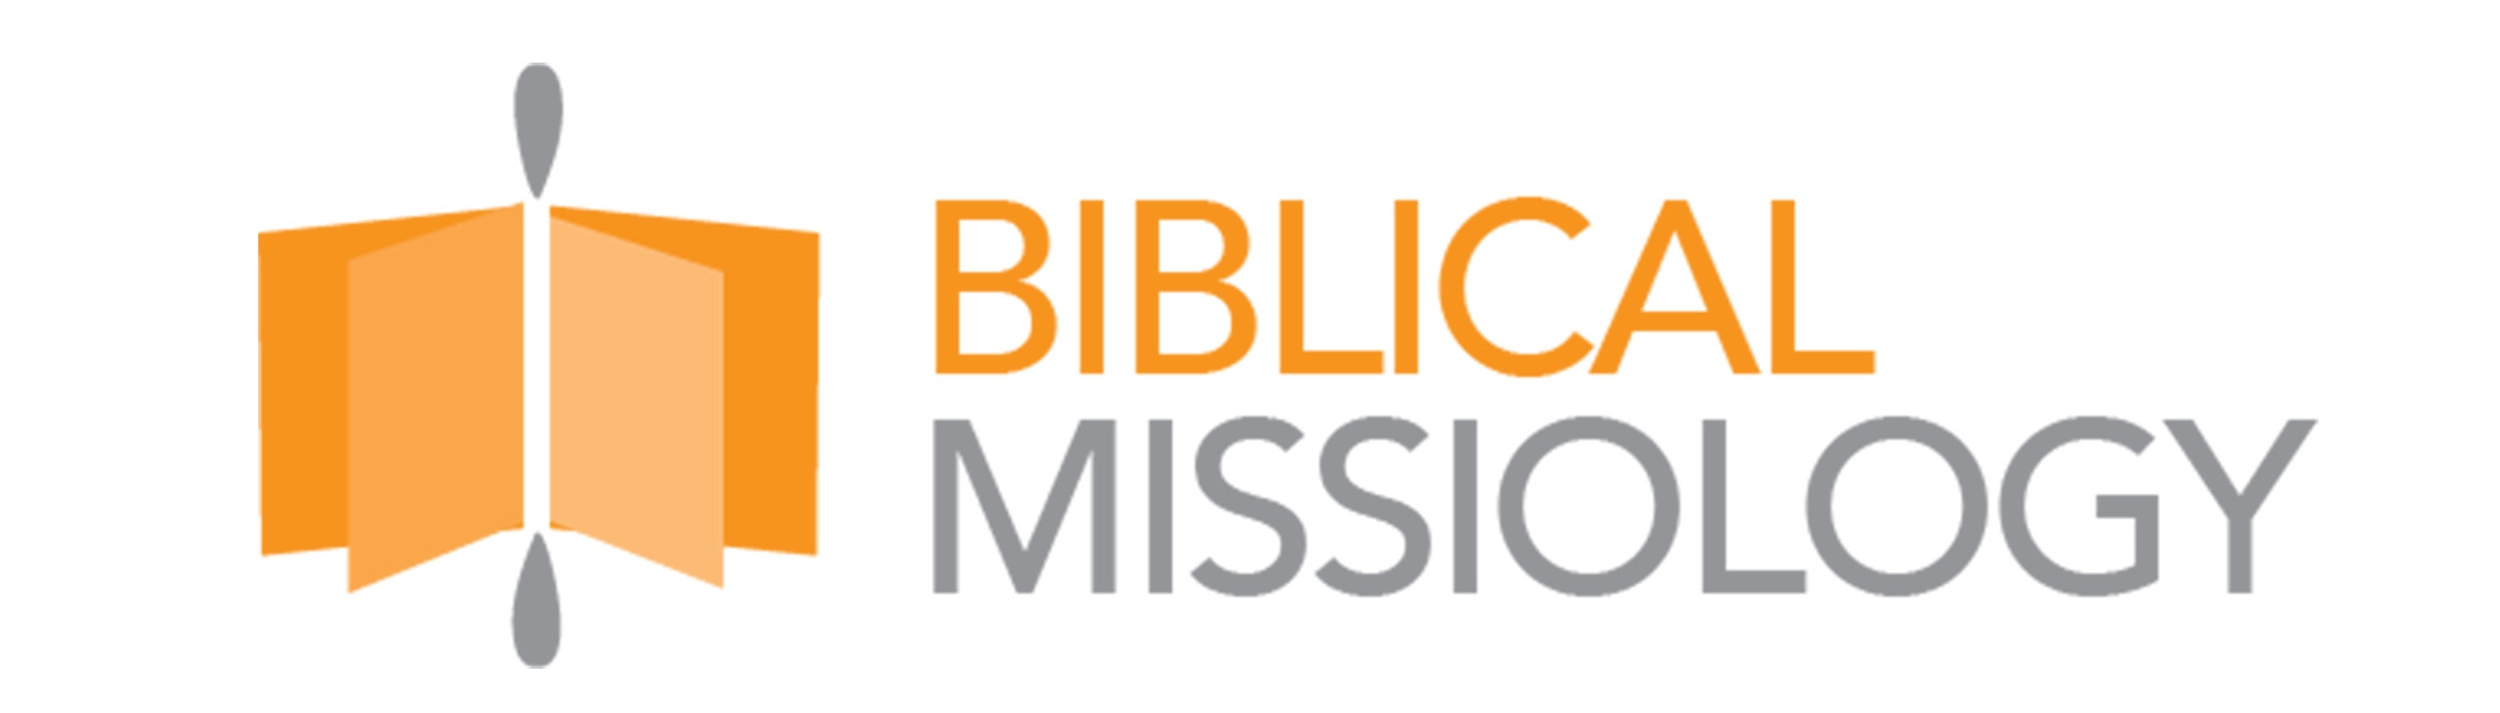 Biblical Missiology Logo .jpg